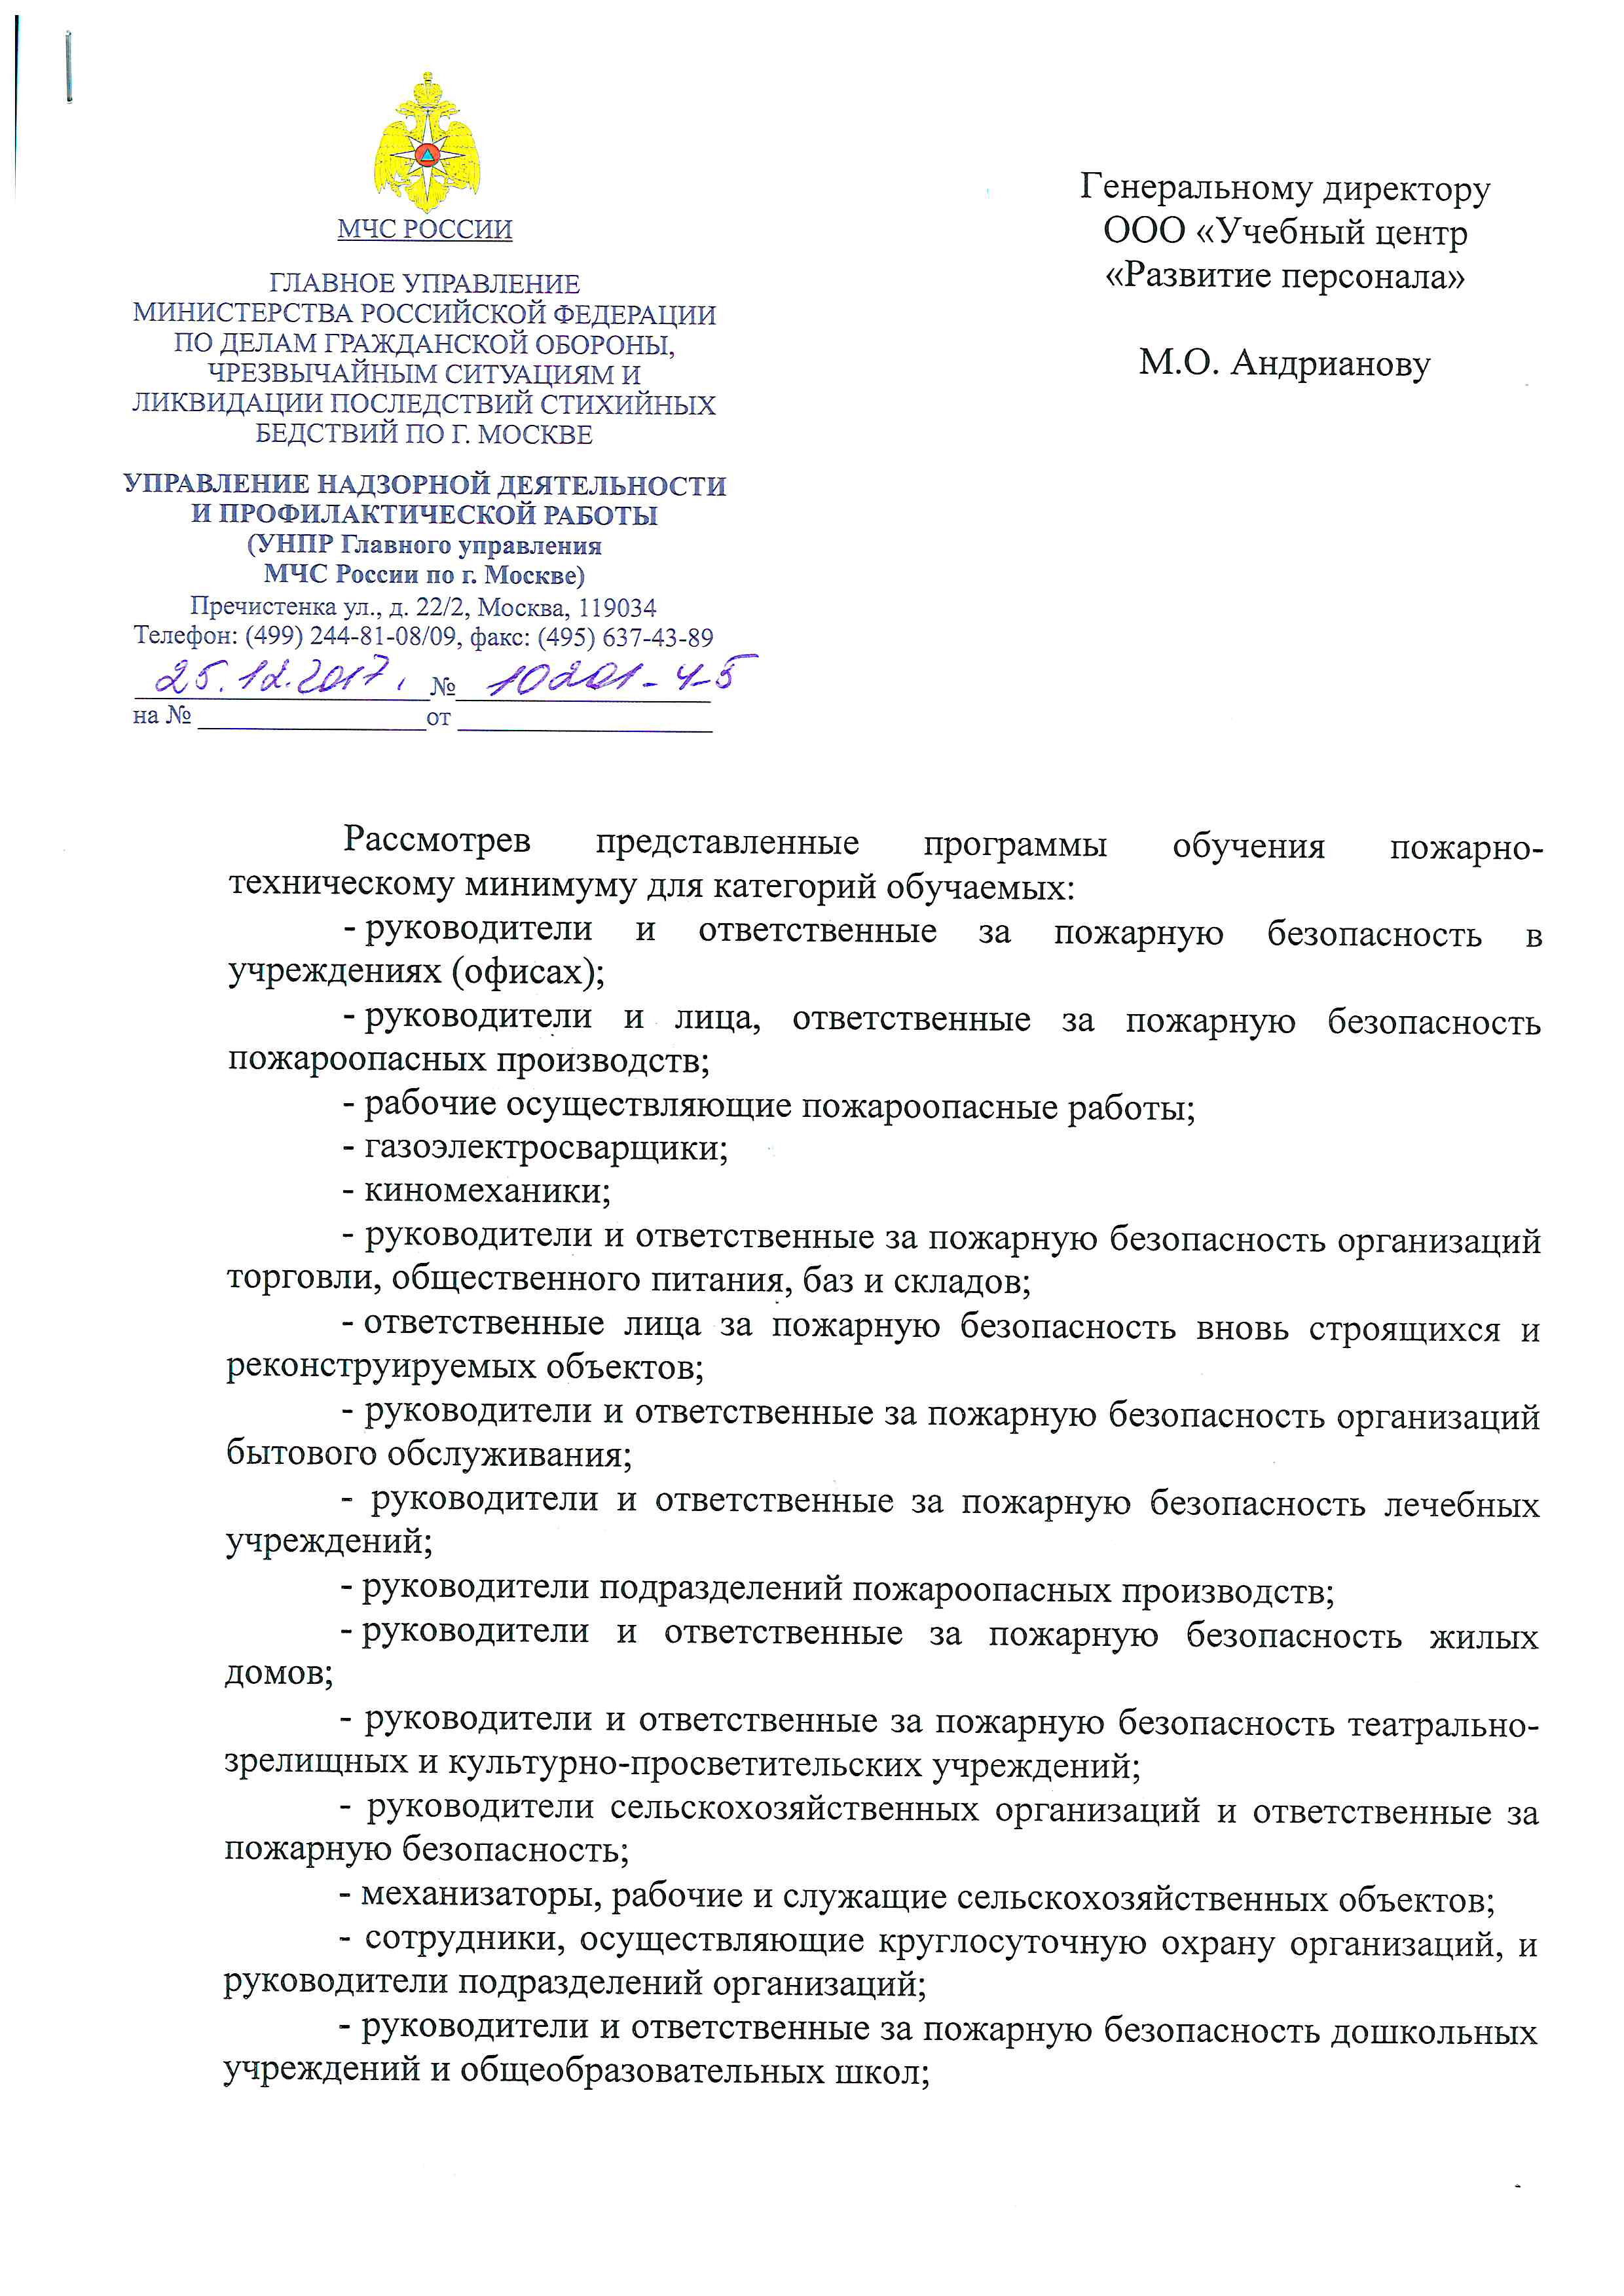 Письмо Главного управления МЧС России по утверждению программ пожарно-технического минимума